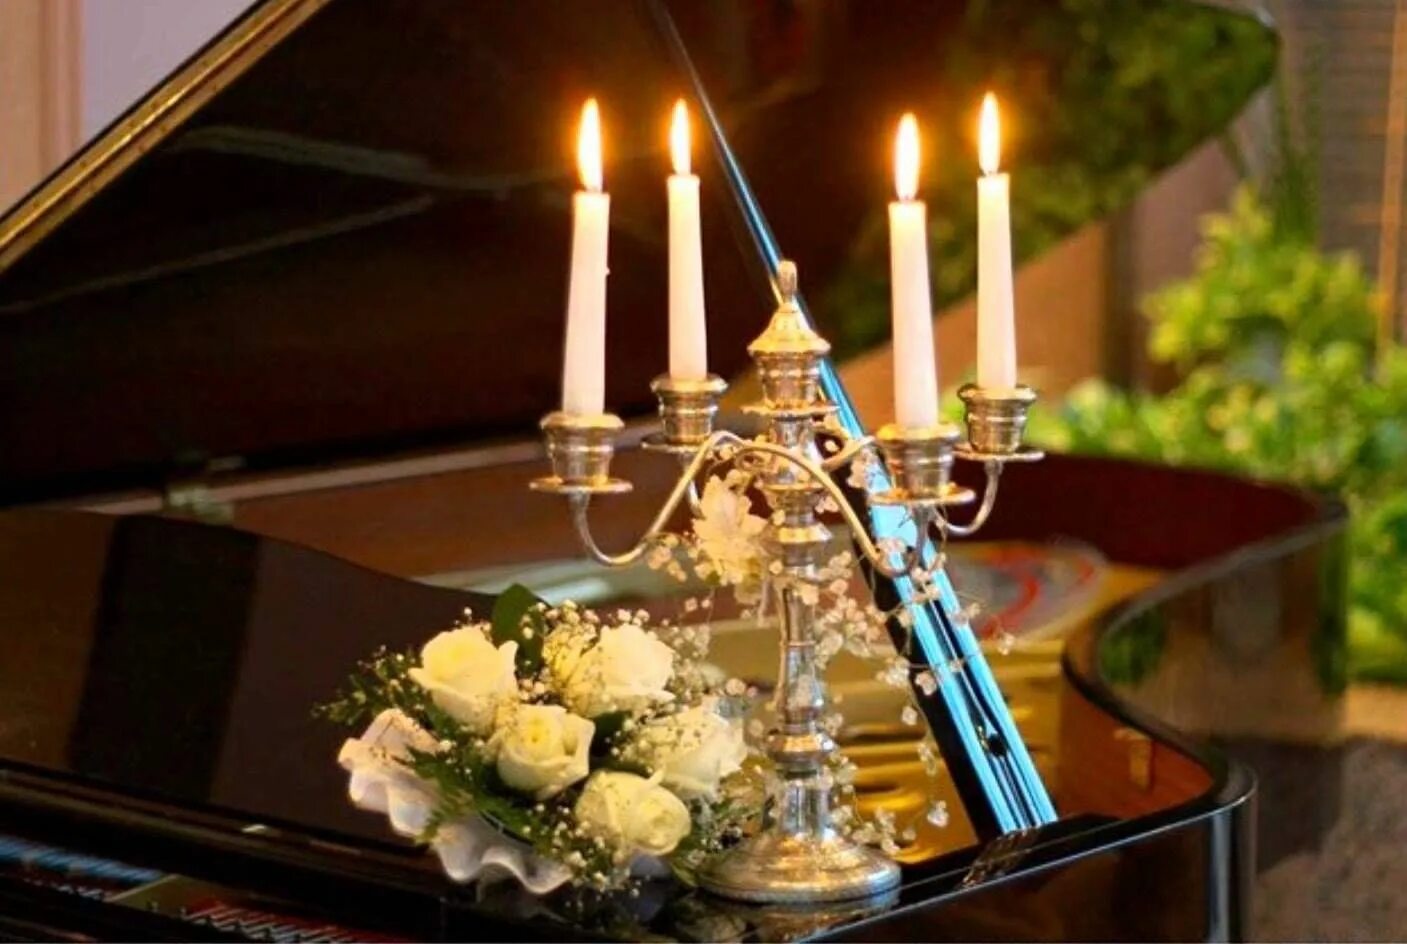 Вивальди при свечах. Рояль и свечи. Цветы и свечи. Музыкальный вечер. Фортепиано и свечи.